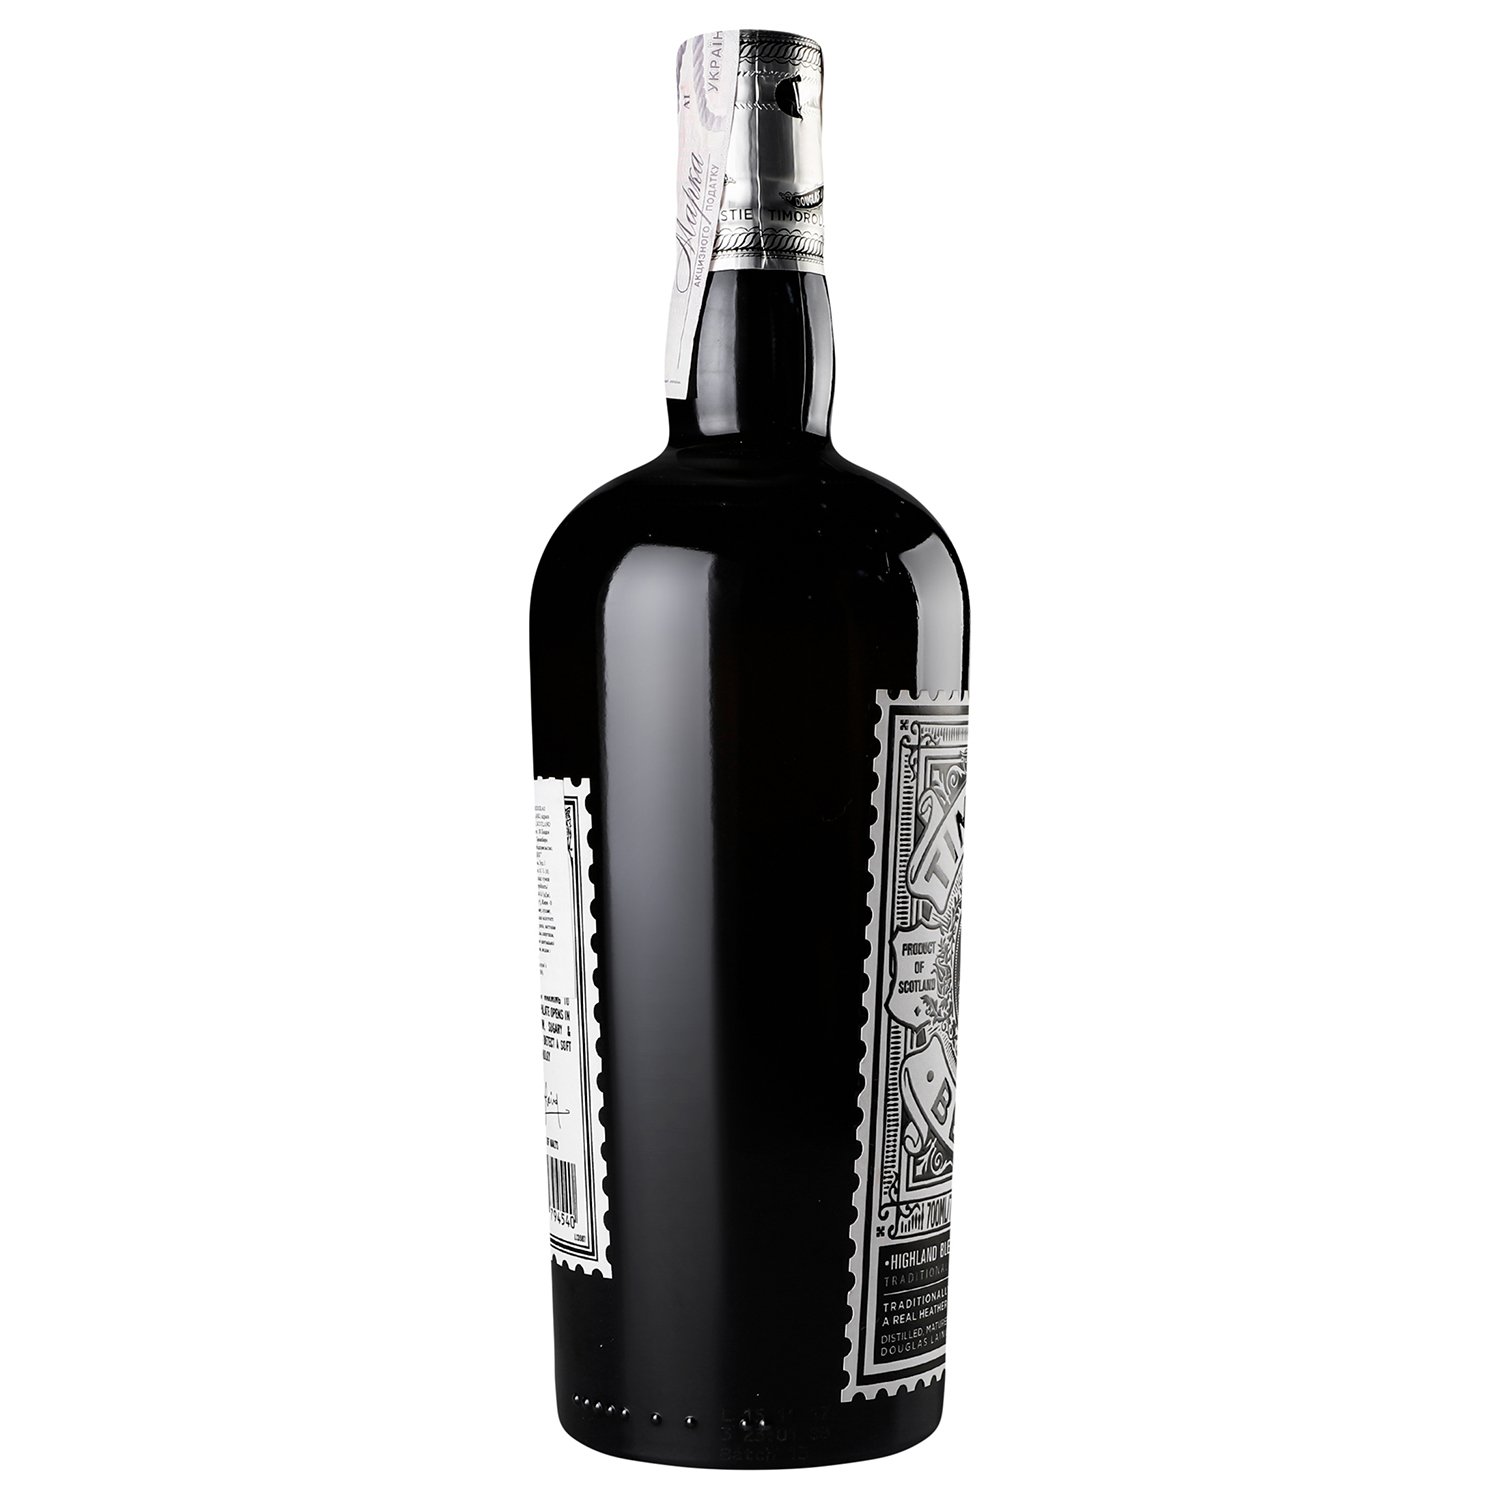 Віскі Douglas Laing Timorous Beastie Blended Malt Scotch Whisky 46.8% 0.7 л - фото 3